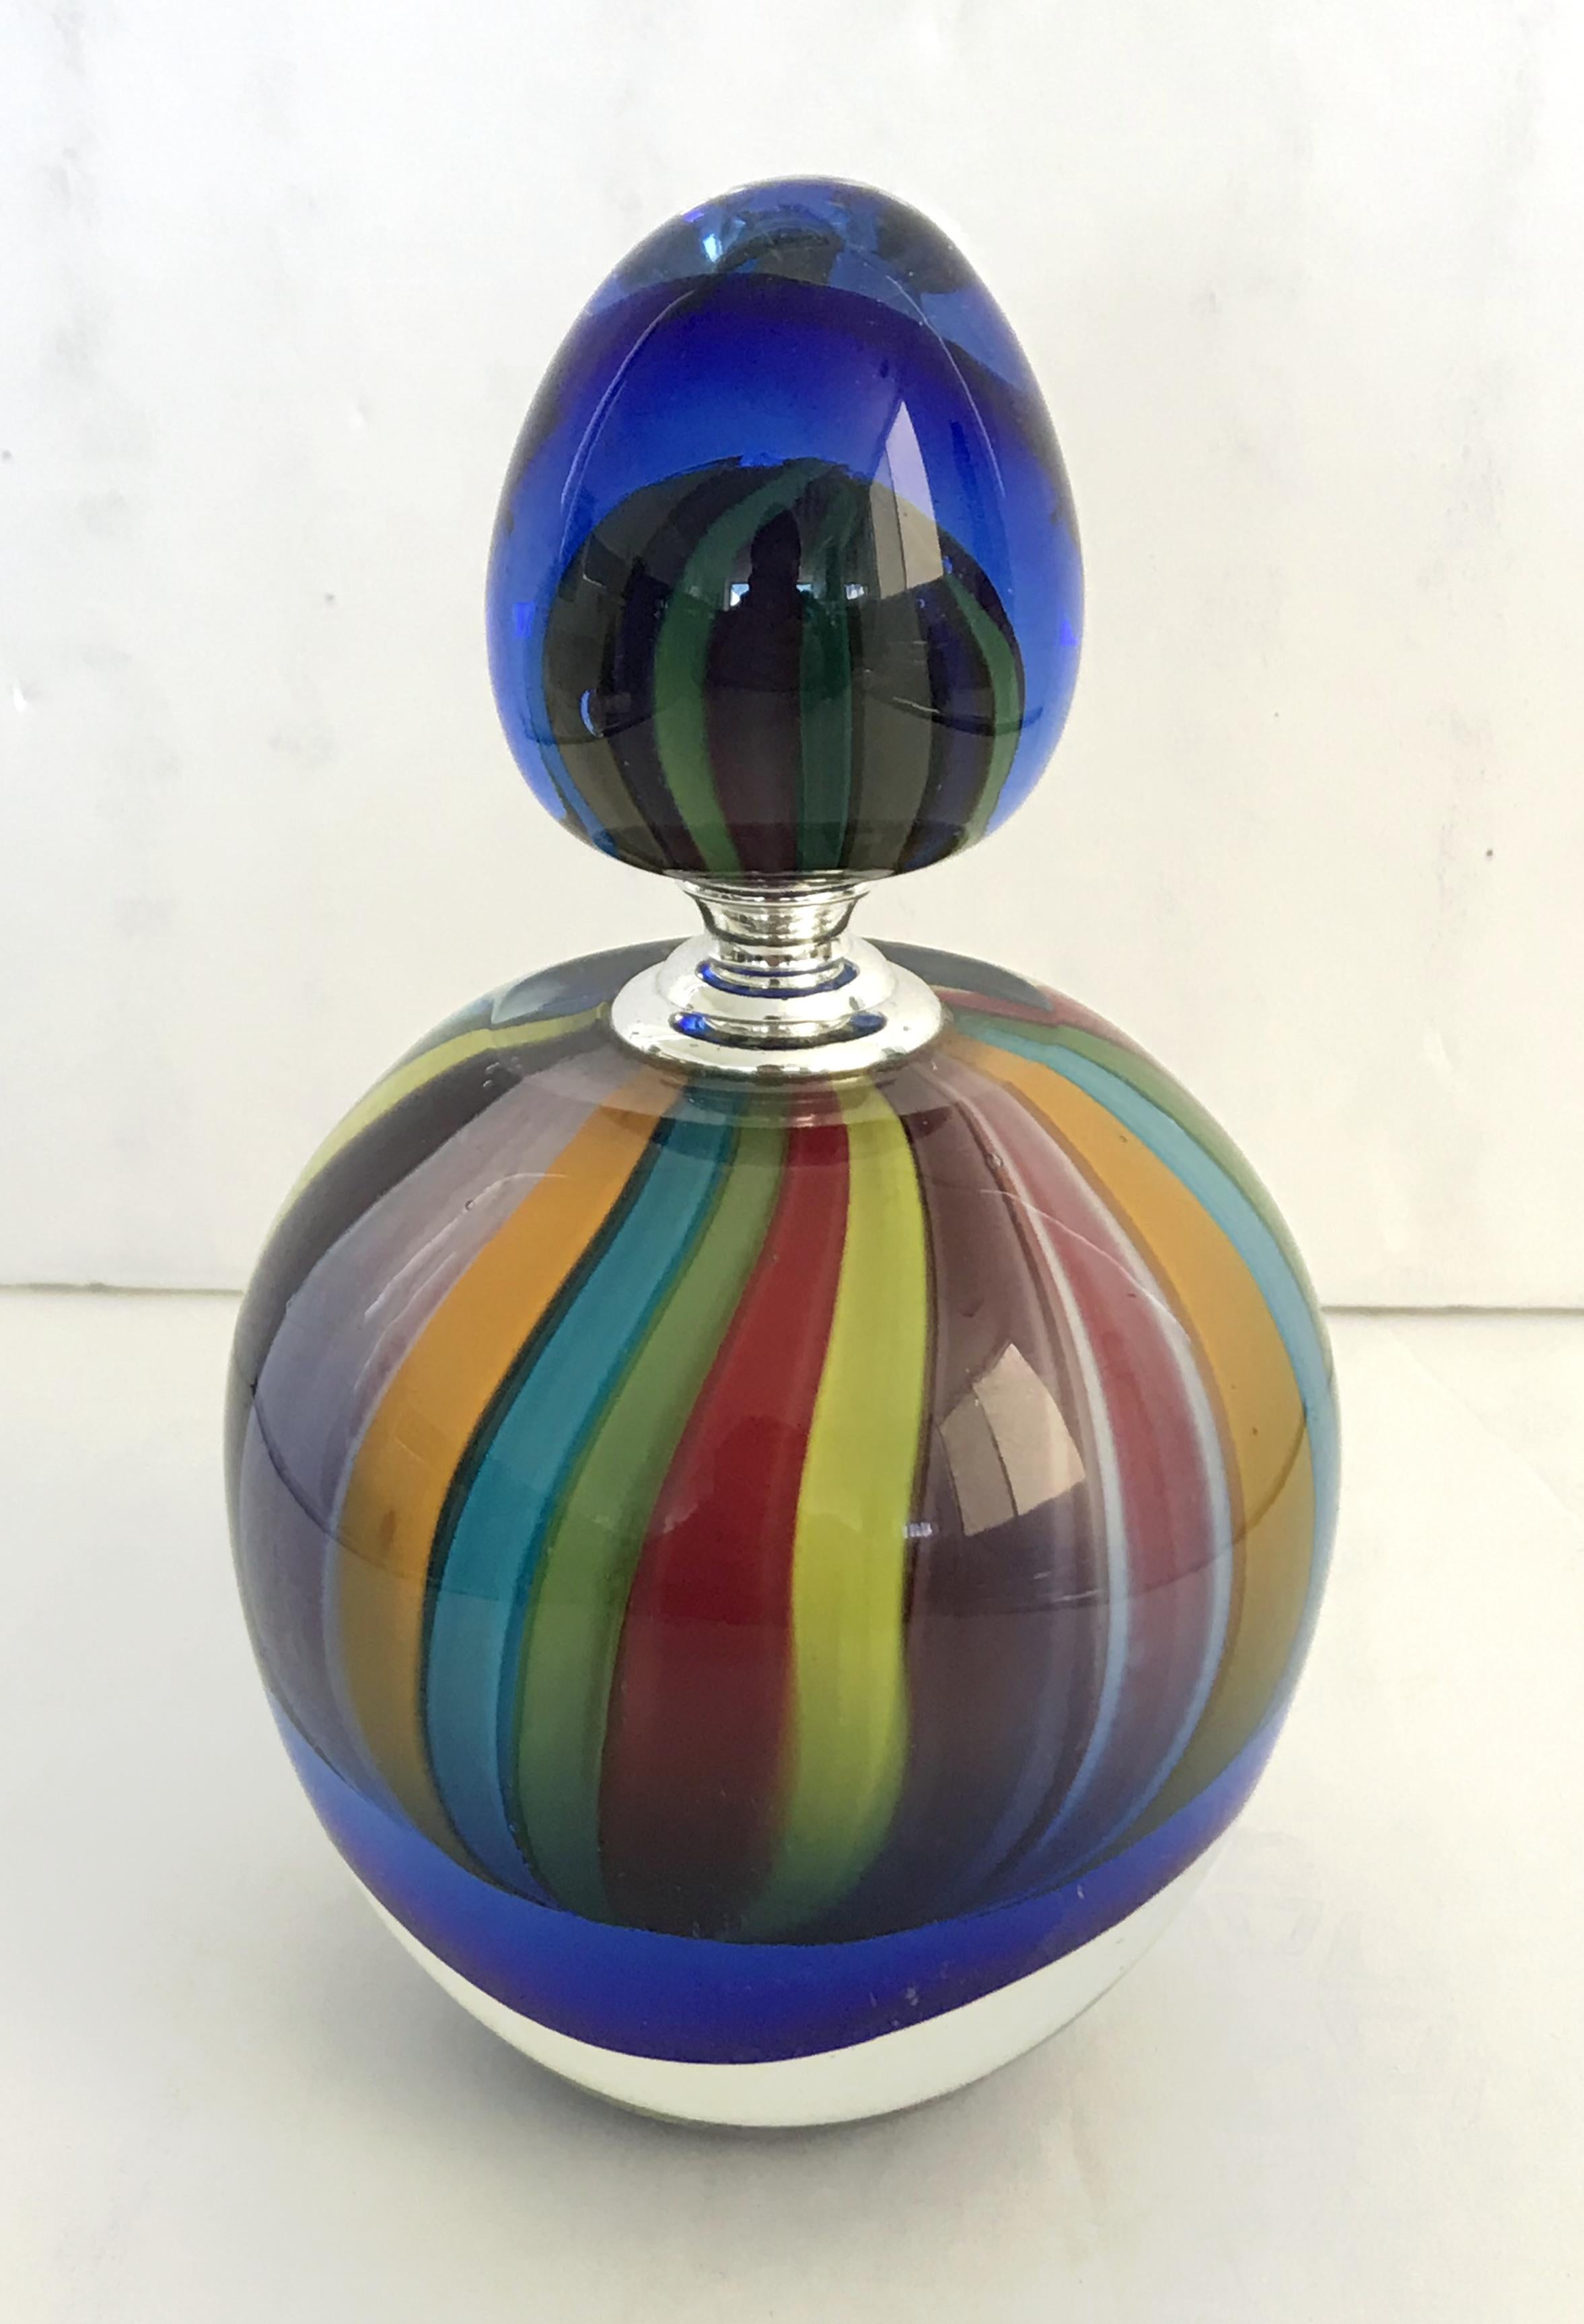 Flacon de parfum italien vintage avec son bouchon en verre original, verre de Murano soufflé à la main dans un spectre de couleurs arc-en-ciel, fabriqué en Italie dans les années 1970
Mesures : diamètre de 4 pouces, hauteur totale de 7 pouces,